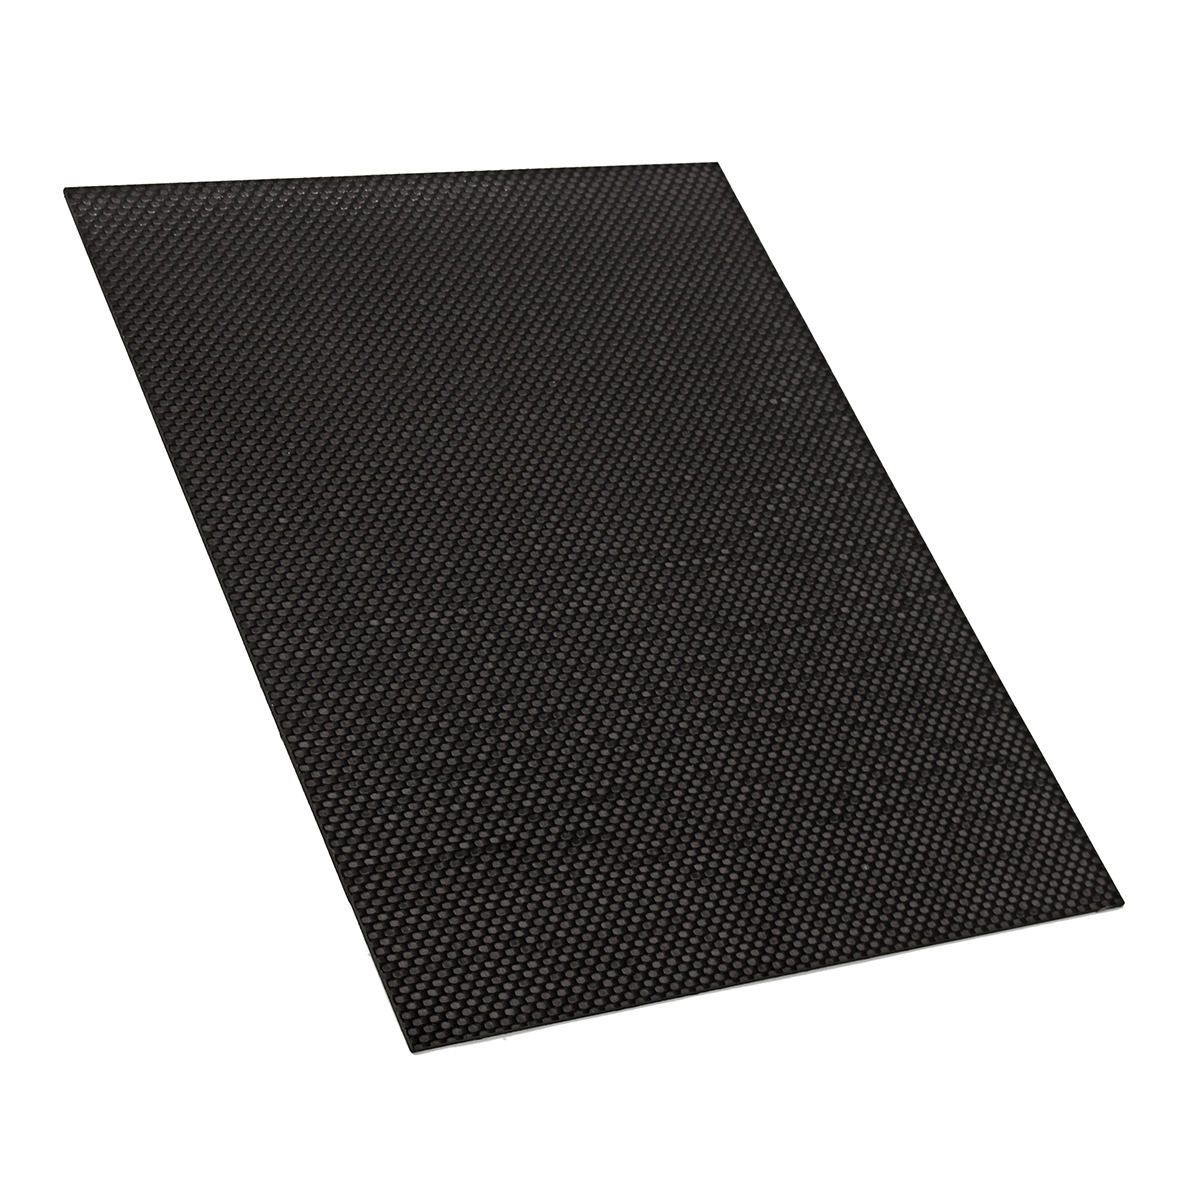 200x250x05-2mm-Plain-Weave-3K-Carbon-Fiber-Plate-Panel-Sheet-Tabby-Matt-Surface-Board-1332224-4